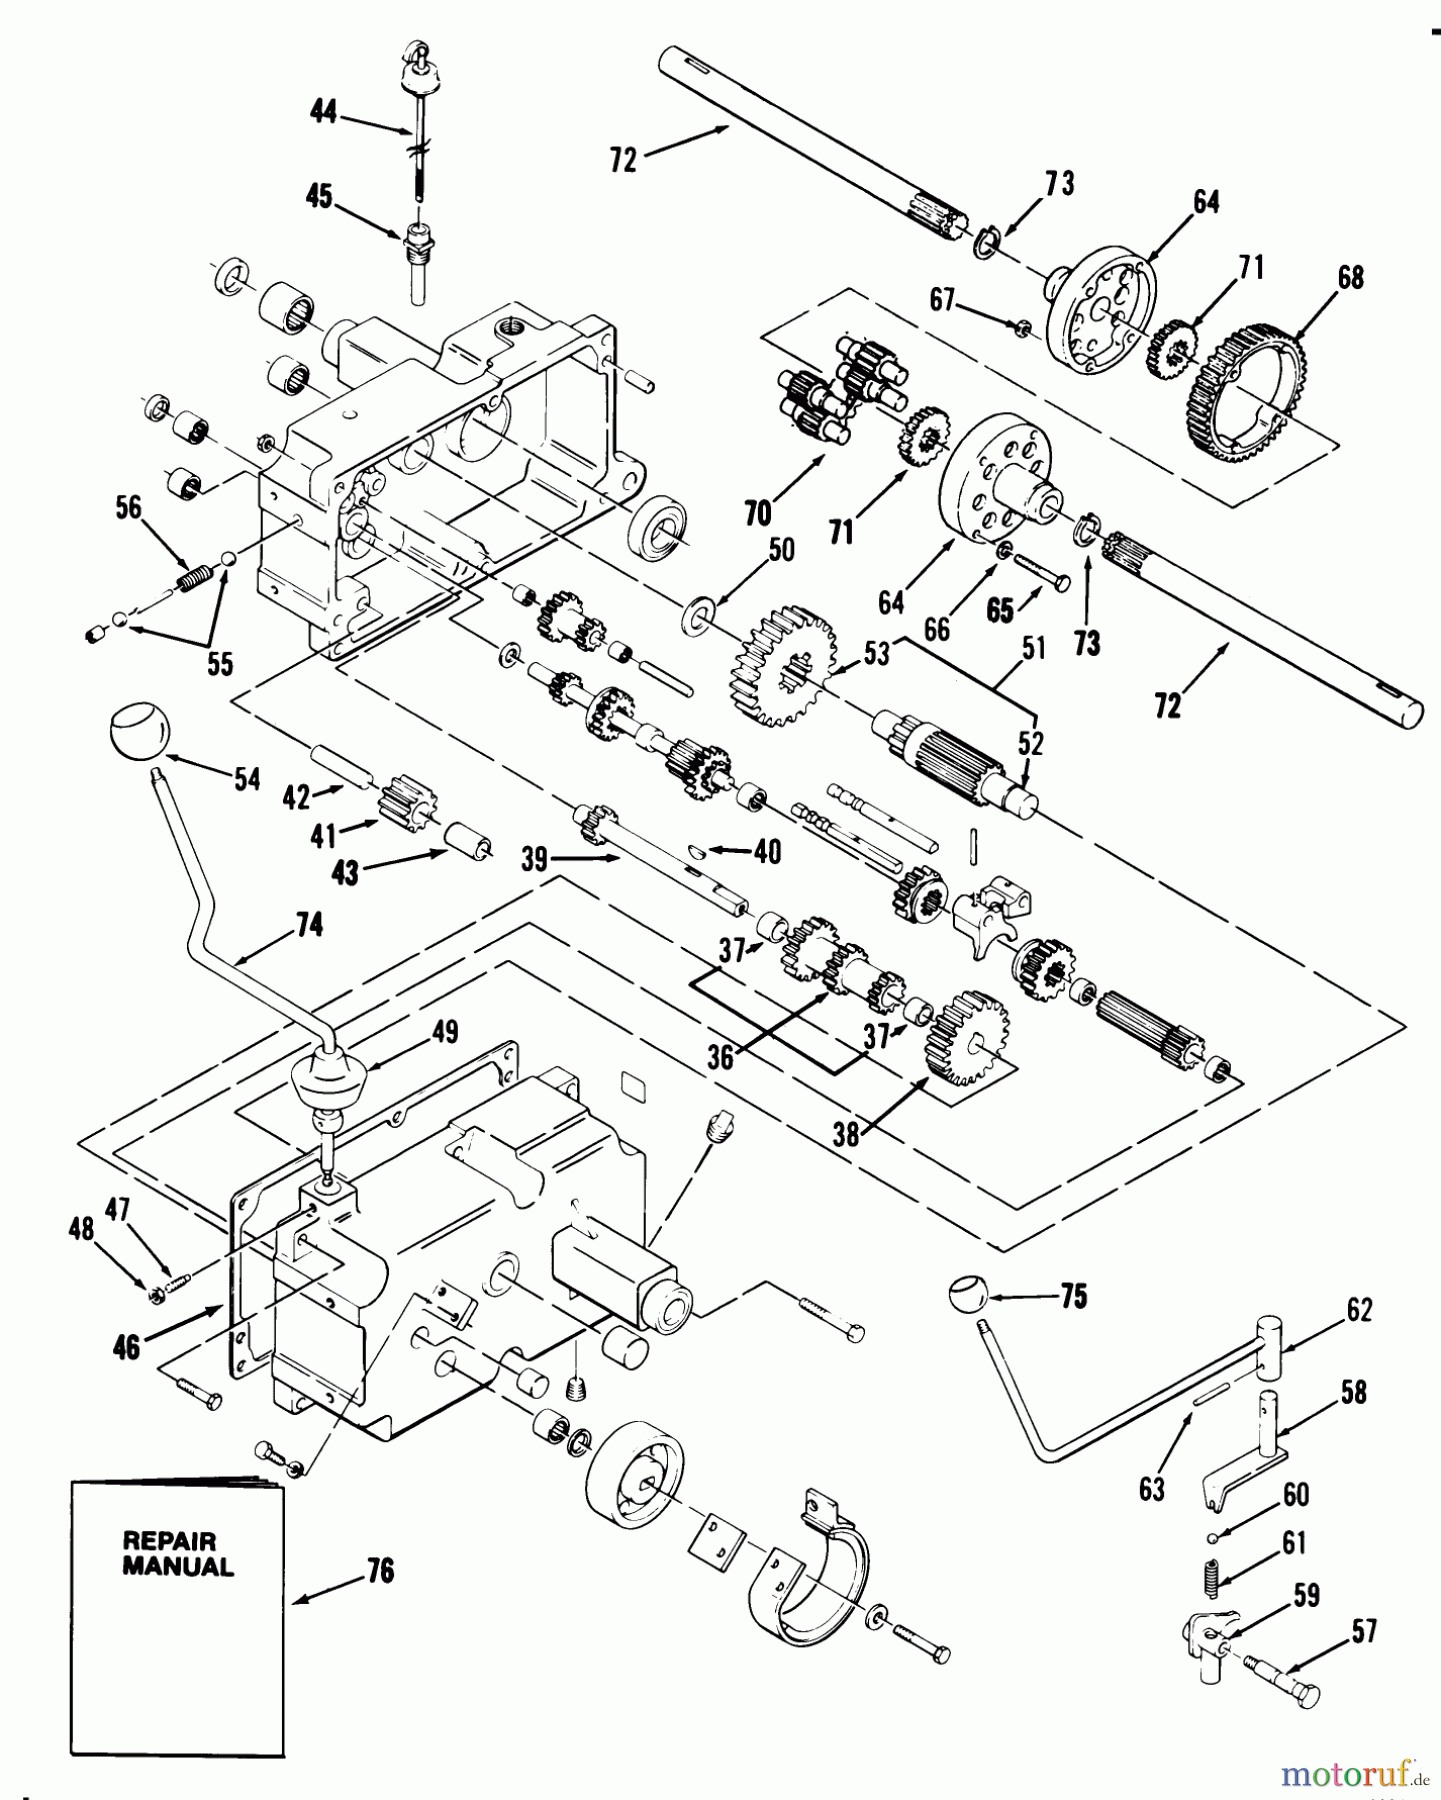  Toro Neu Mowers, Lawn & Garden Tractor Seite 1 31-16K804 (416-8) - Toro 416-8 Garden Tractor, 1988 MECHANICAL TRANSMISSION-8-SPEED #2